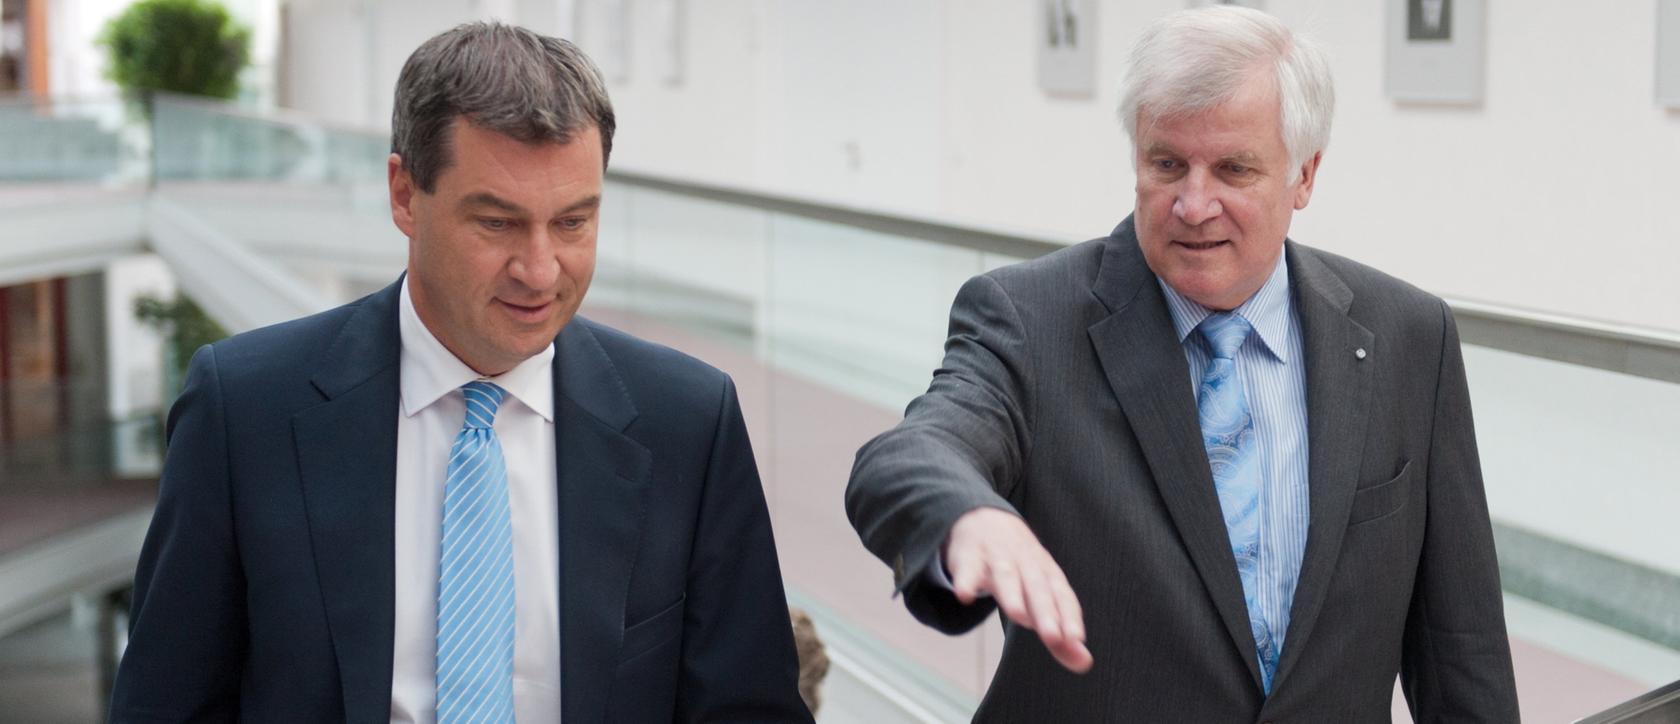 Markus Söder und Horst Seehofer: Ein Viertel aller CSU-Mitglieder will keinen von ihnen als Ministerpräsidenten.